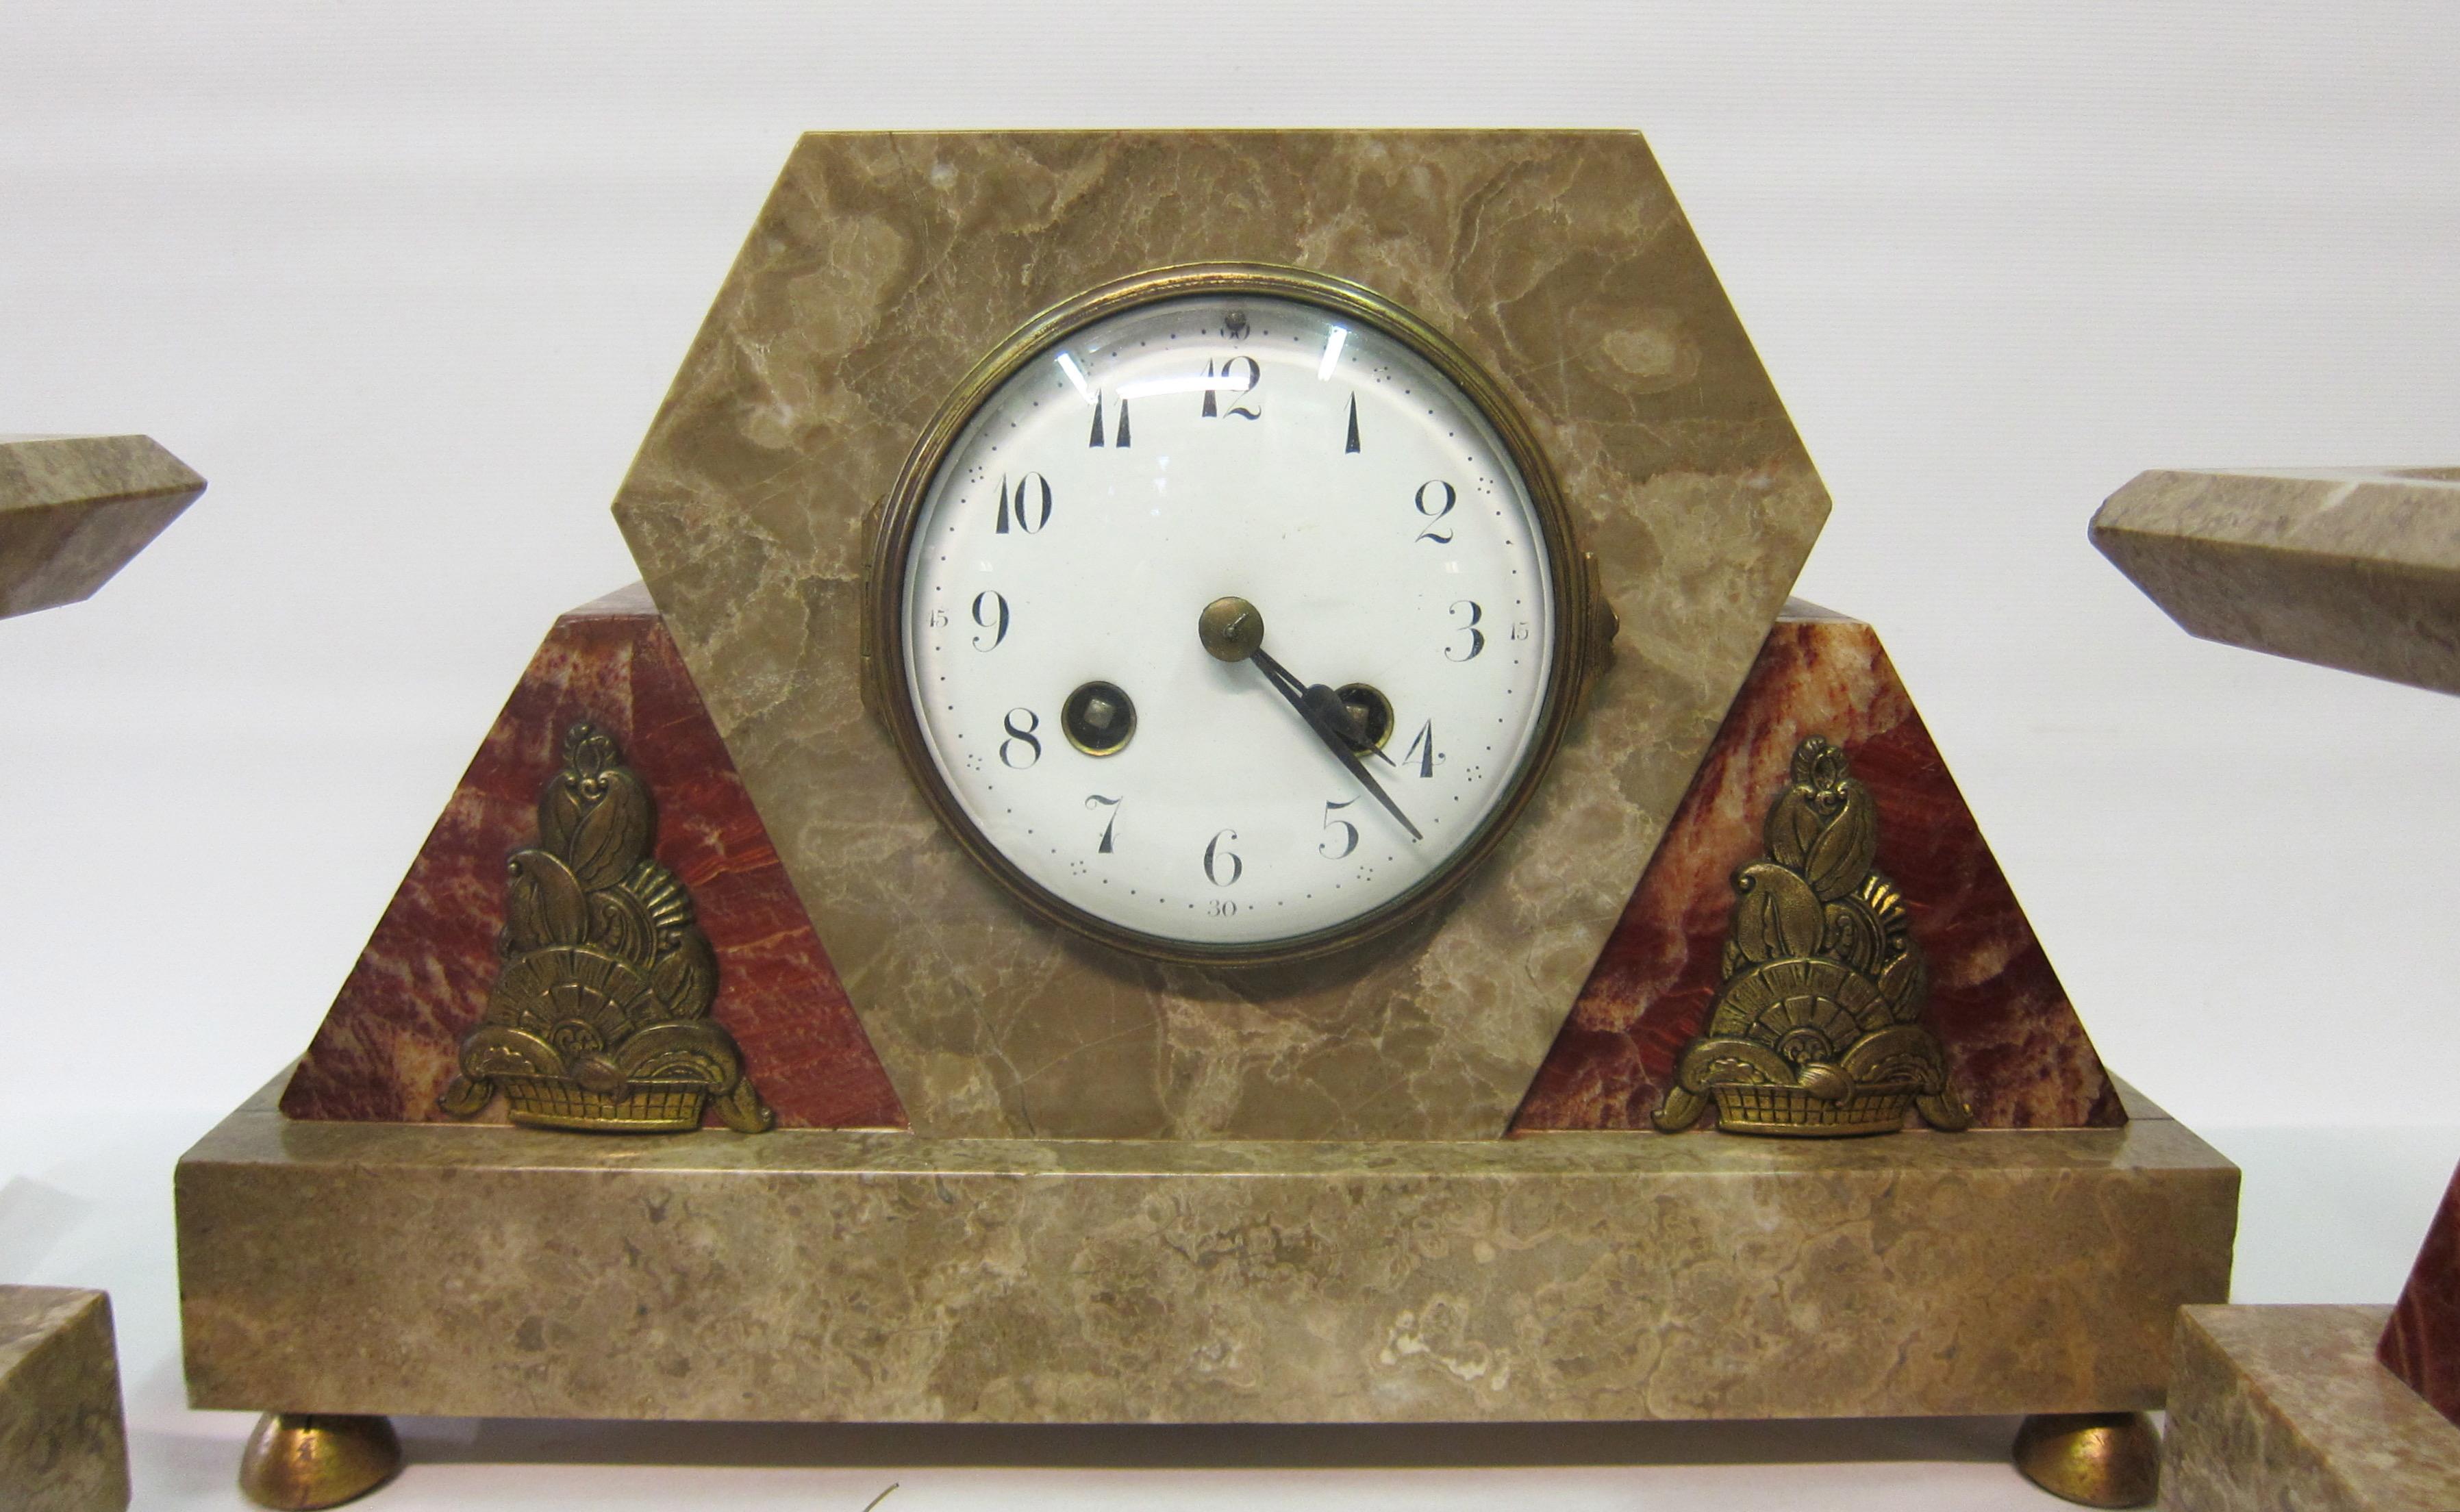 Ein Vintage-Uhrenset im Art-Déco-Stil, um 1930. Die Uhr und das passende Zubehör sind mit detaillierten Bronzedekorationen verziert, die auf dreieckigen Formen aus rotem Marmor angebracht sind. Dieser rougefarbene Marmor bildet zusammen mit dem